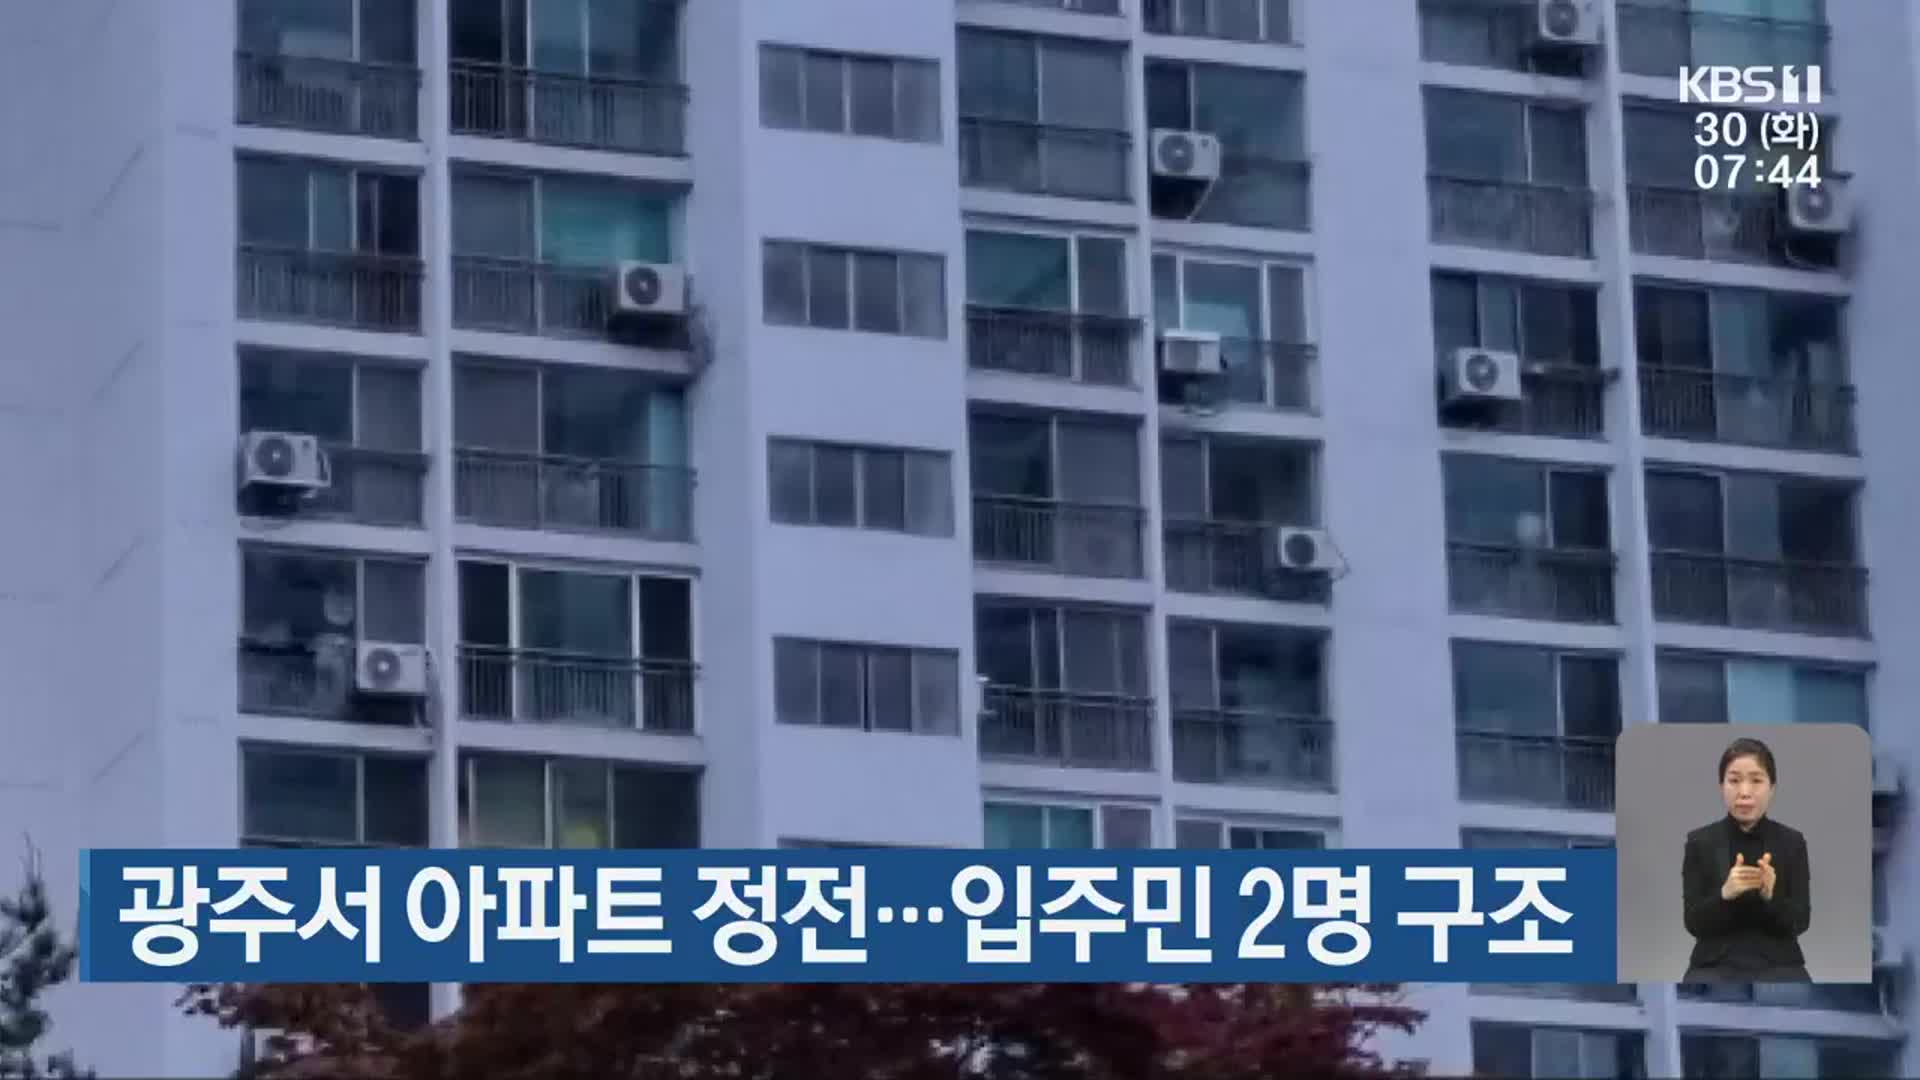 광주서 아파트 정전…입주민 2명 구조